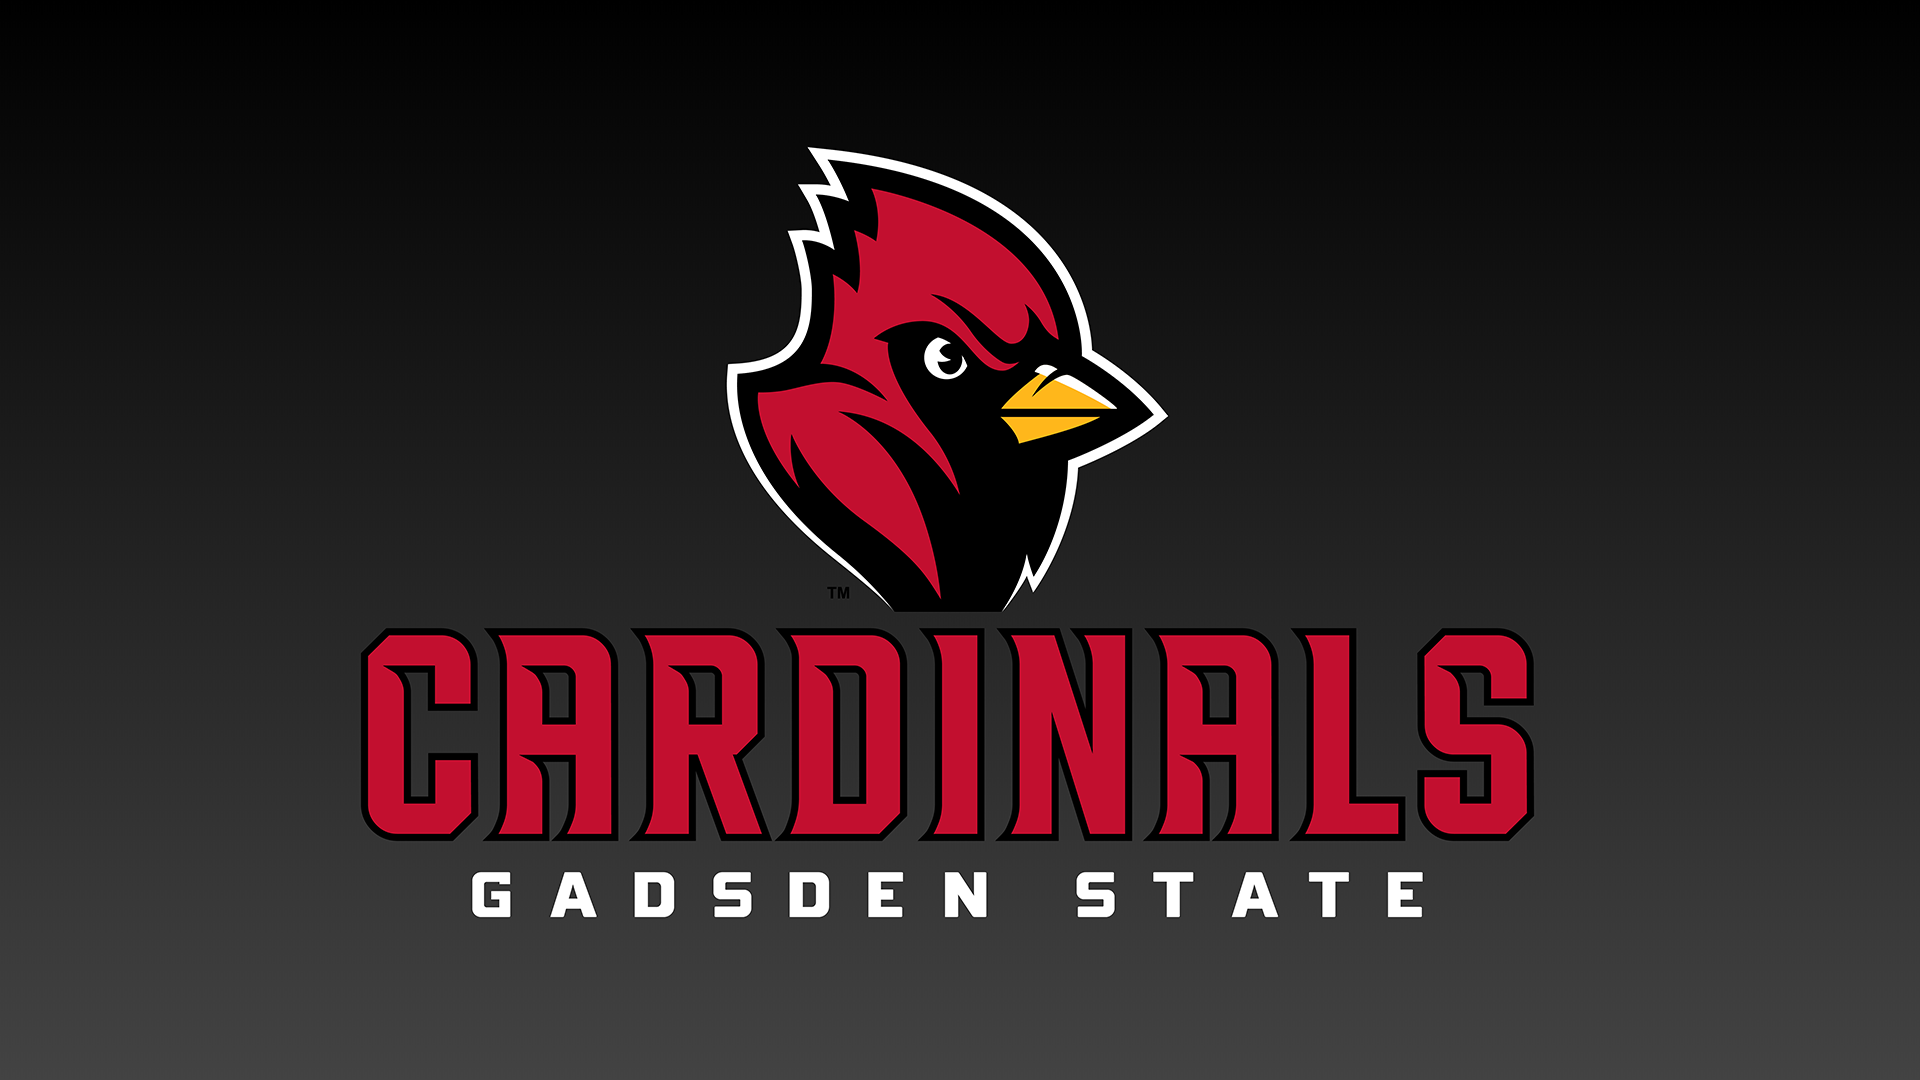 Gadsden State Cardinals logo